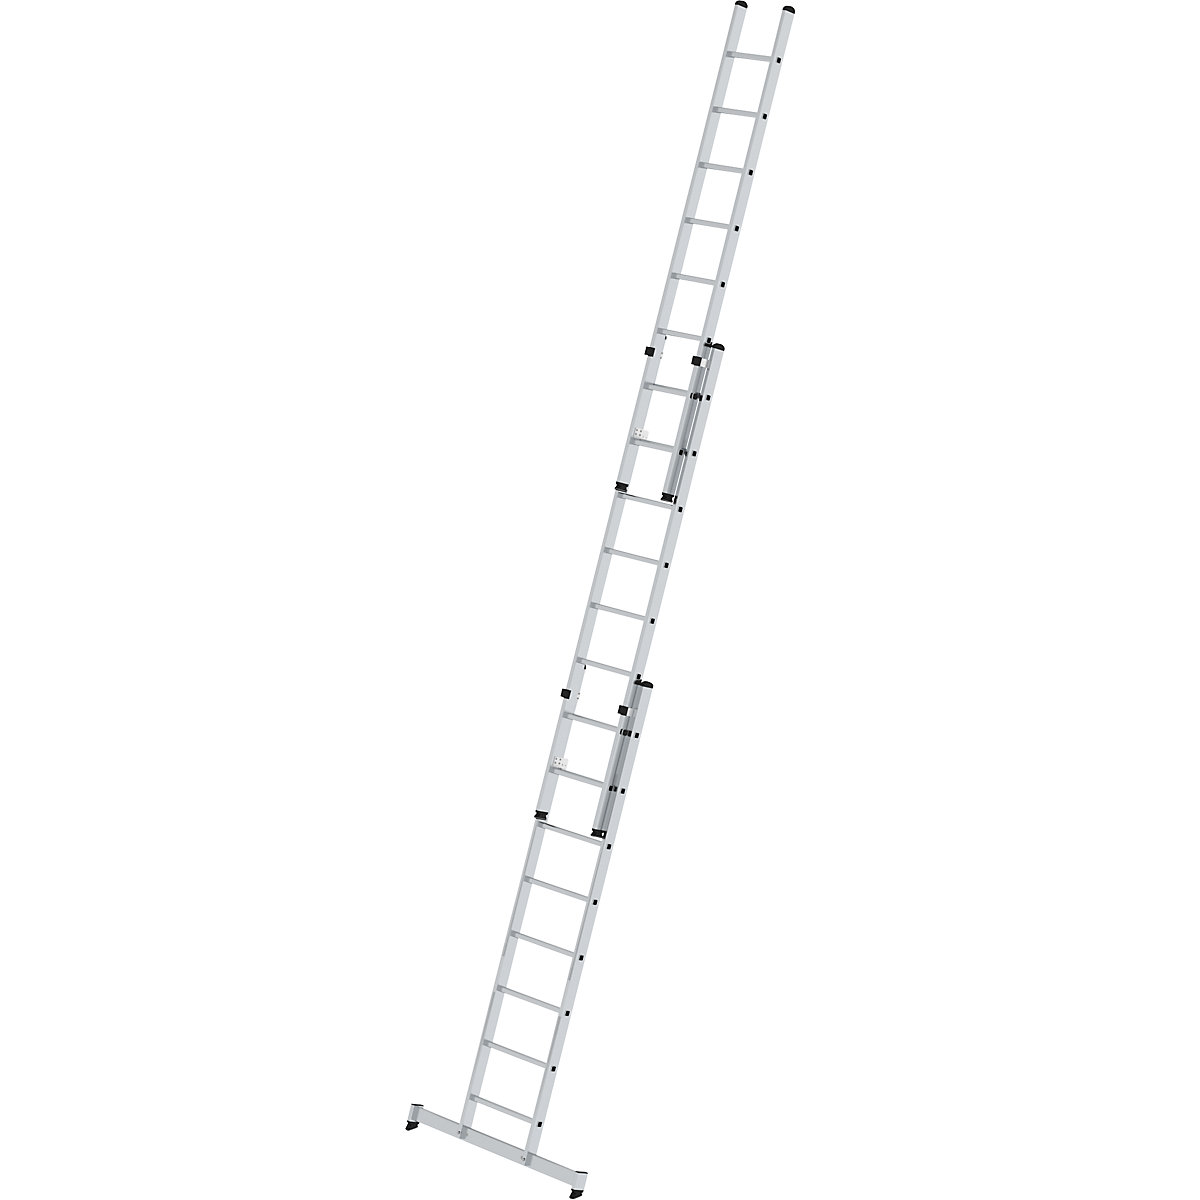 Escada de encosto ajustável em altura – MUNK, escada de regulação por deslize, 3 peças com travessa nivello®, 3 x 8 degraus